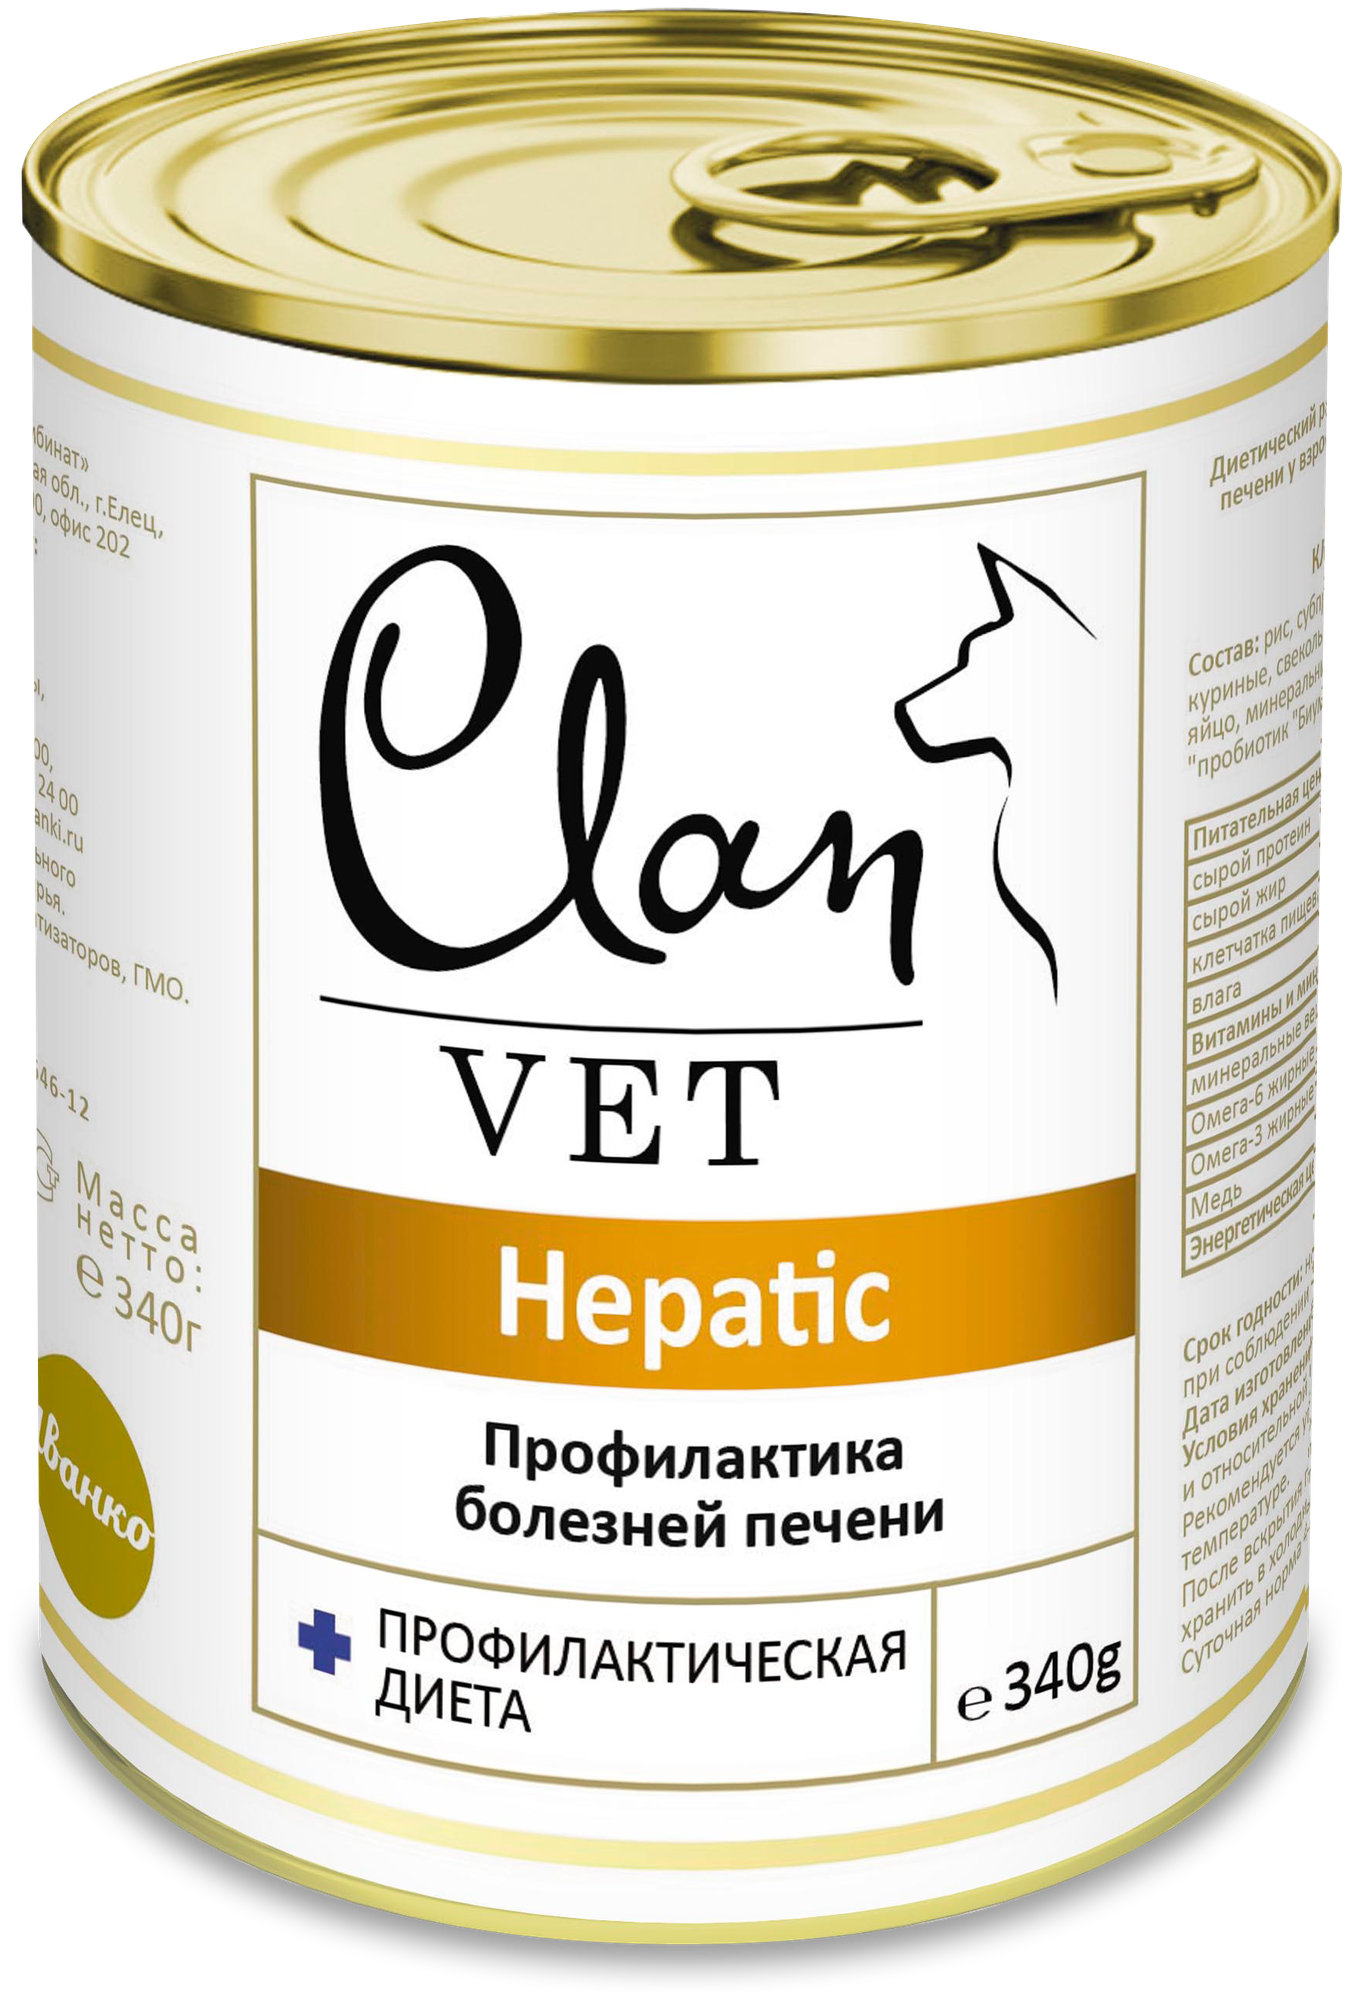 CLAN VET HEPATIC для взрослых собак при заболеваниях печени 340 гр (340 гр)